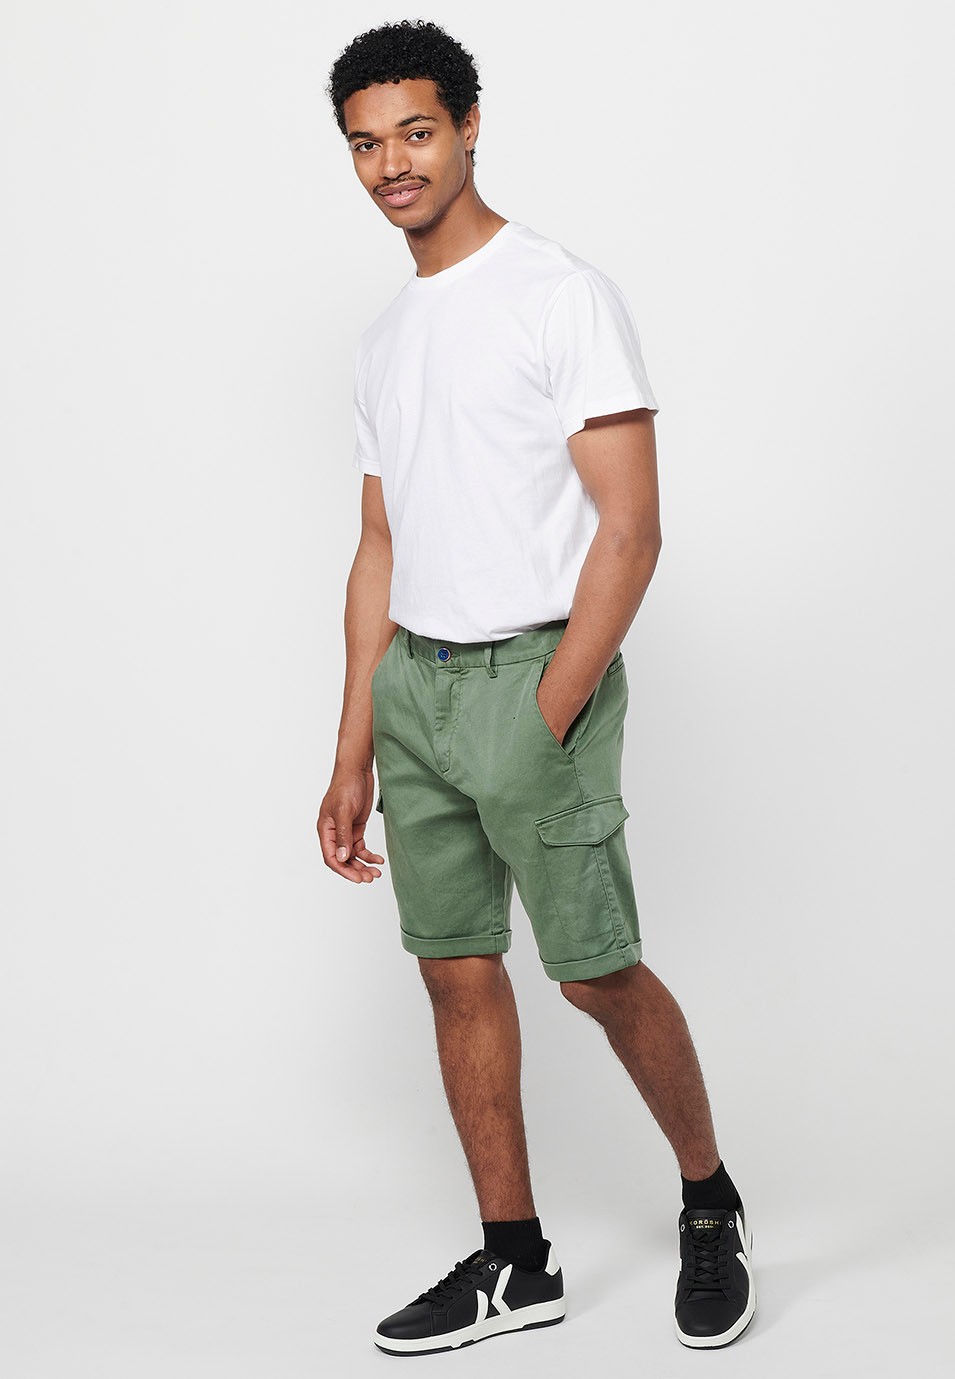 Pantalón corto con Cintura engomada y cierre con cremallera y botón con Bolsillos, dos laterales con solapa de Color Verde para Hombre